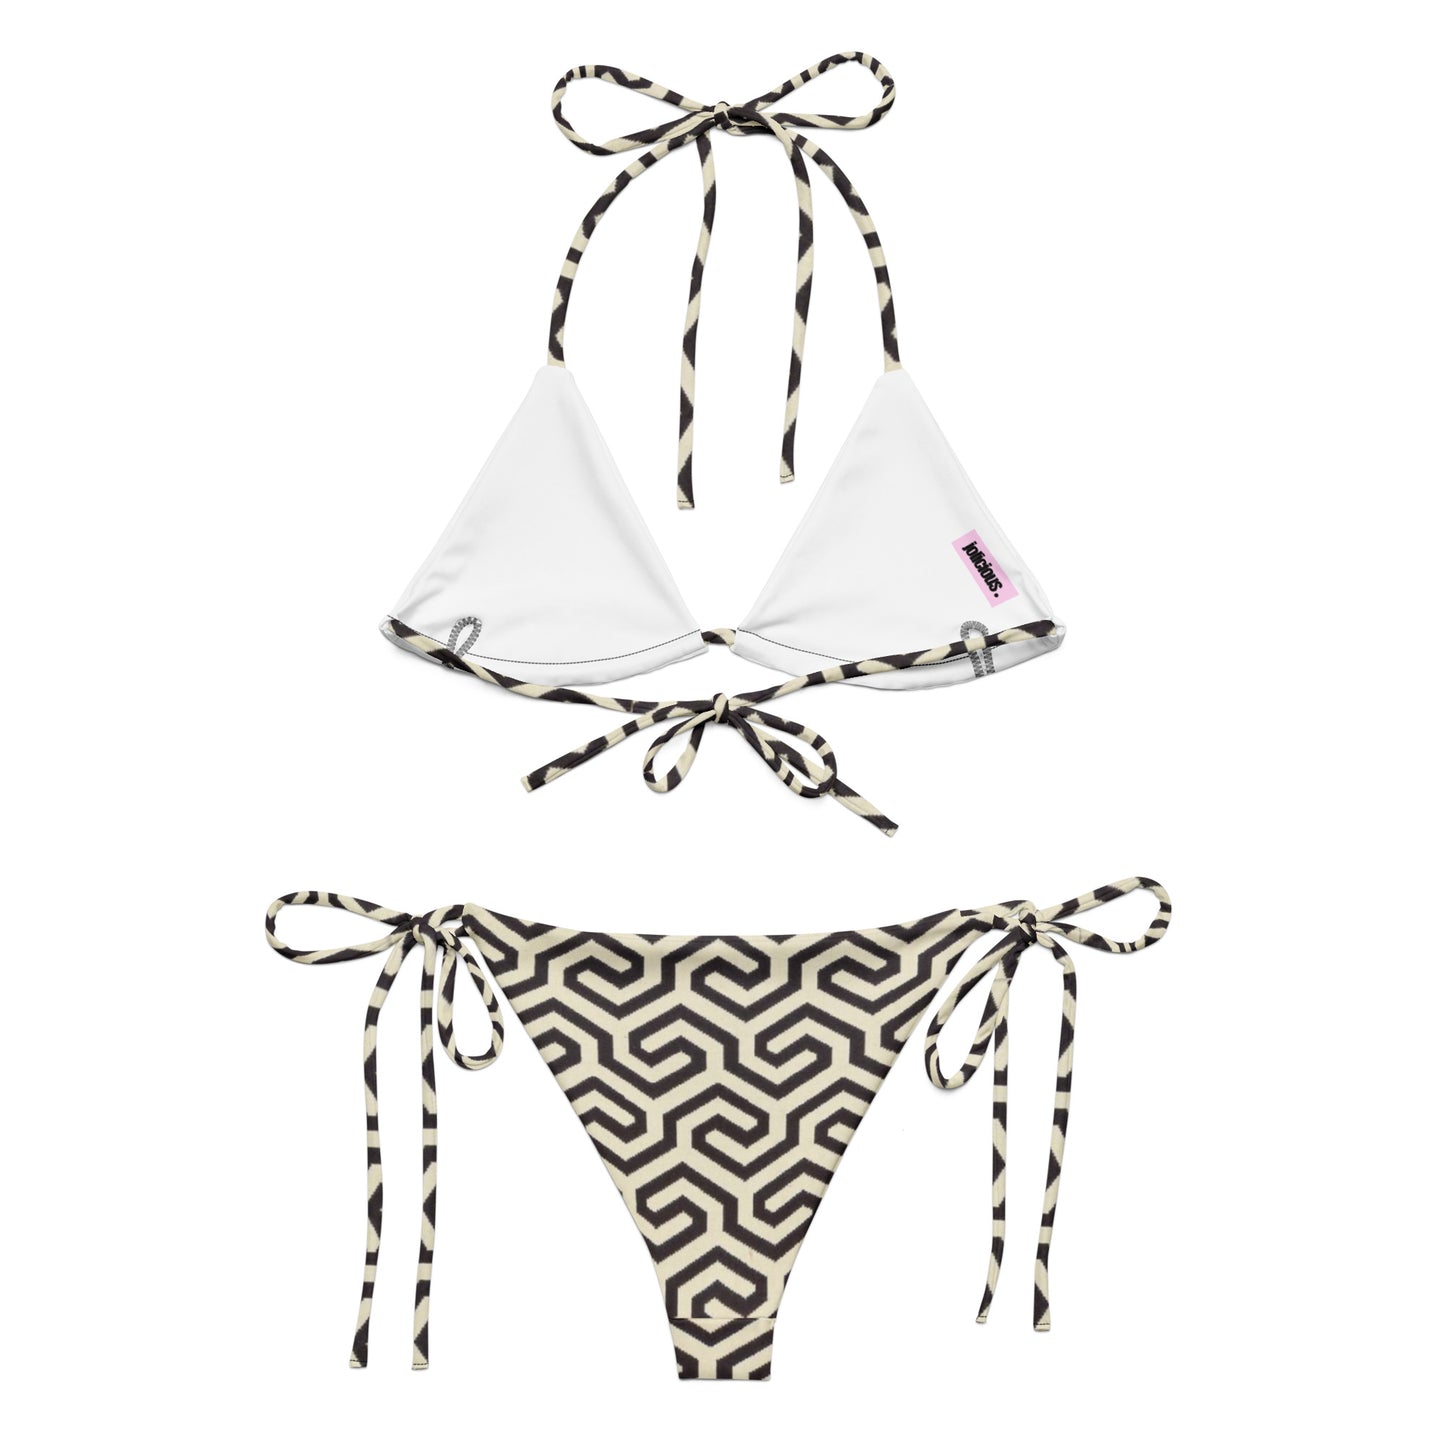 Mase patterned bikini set